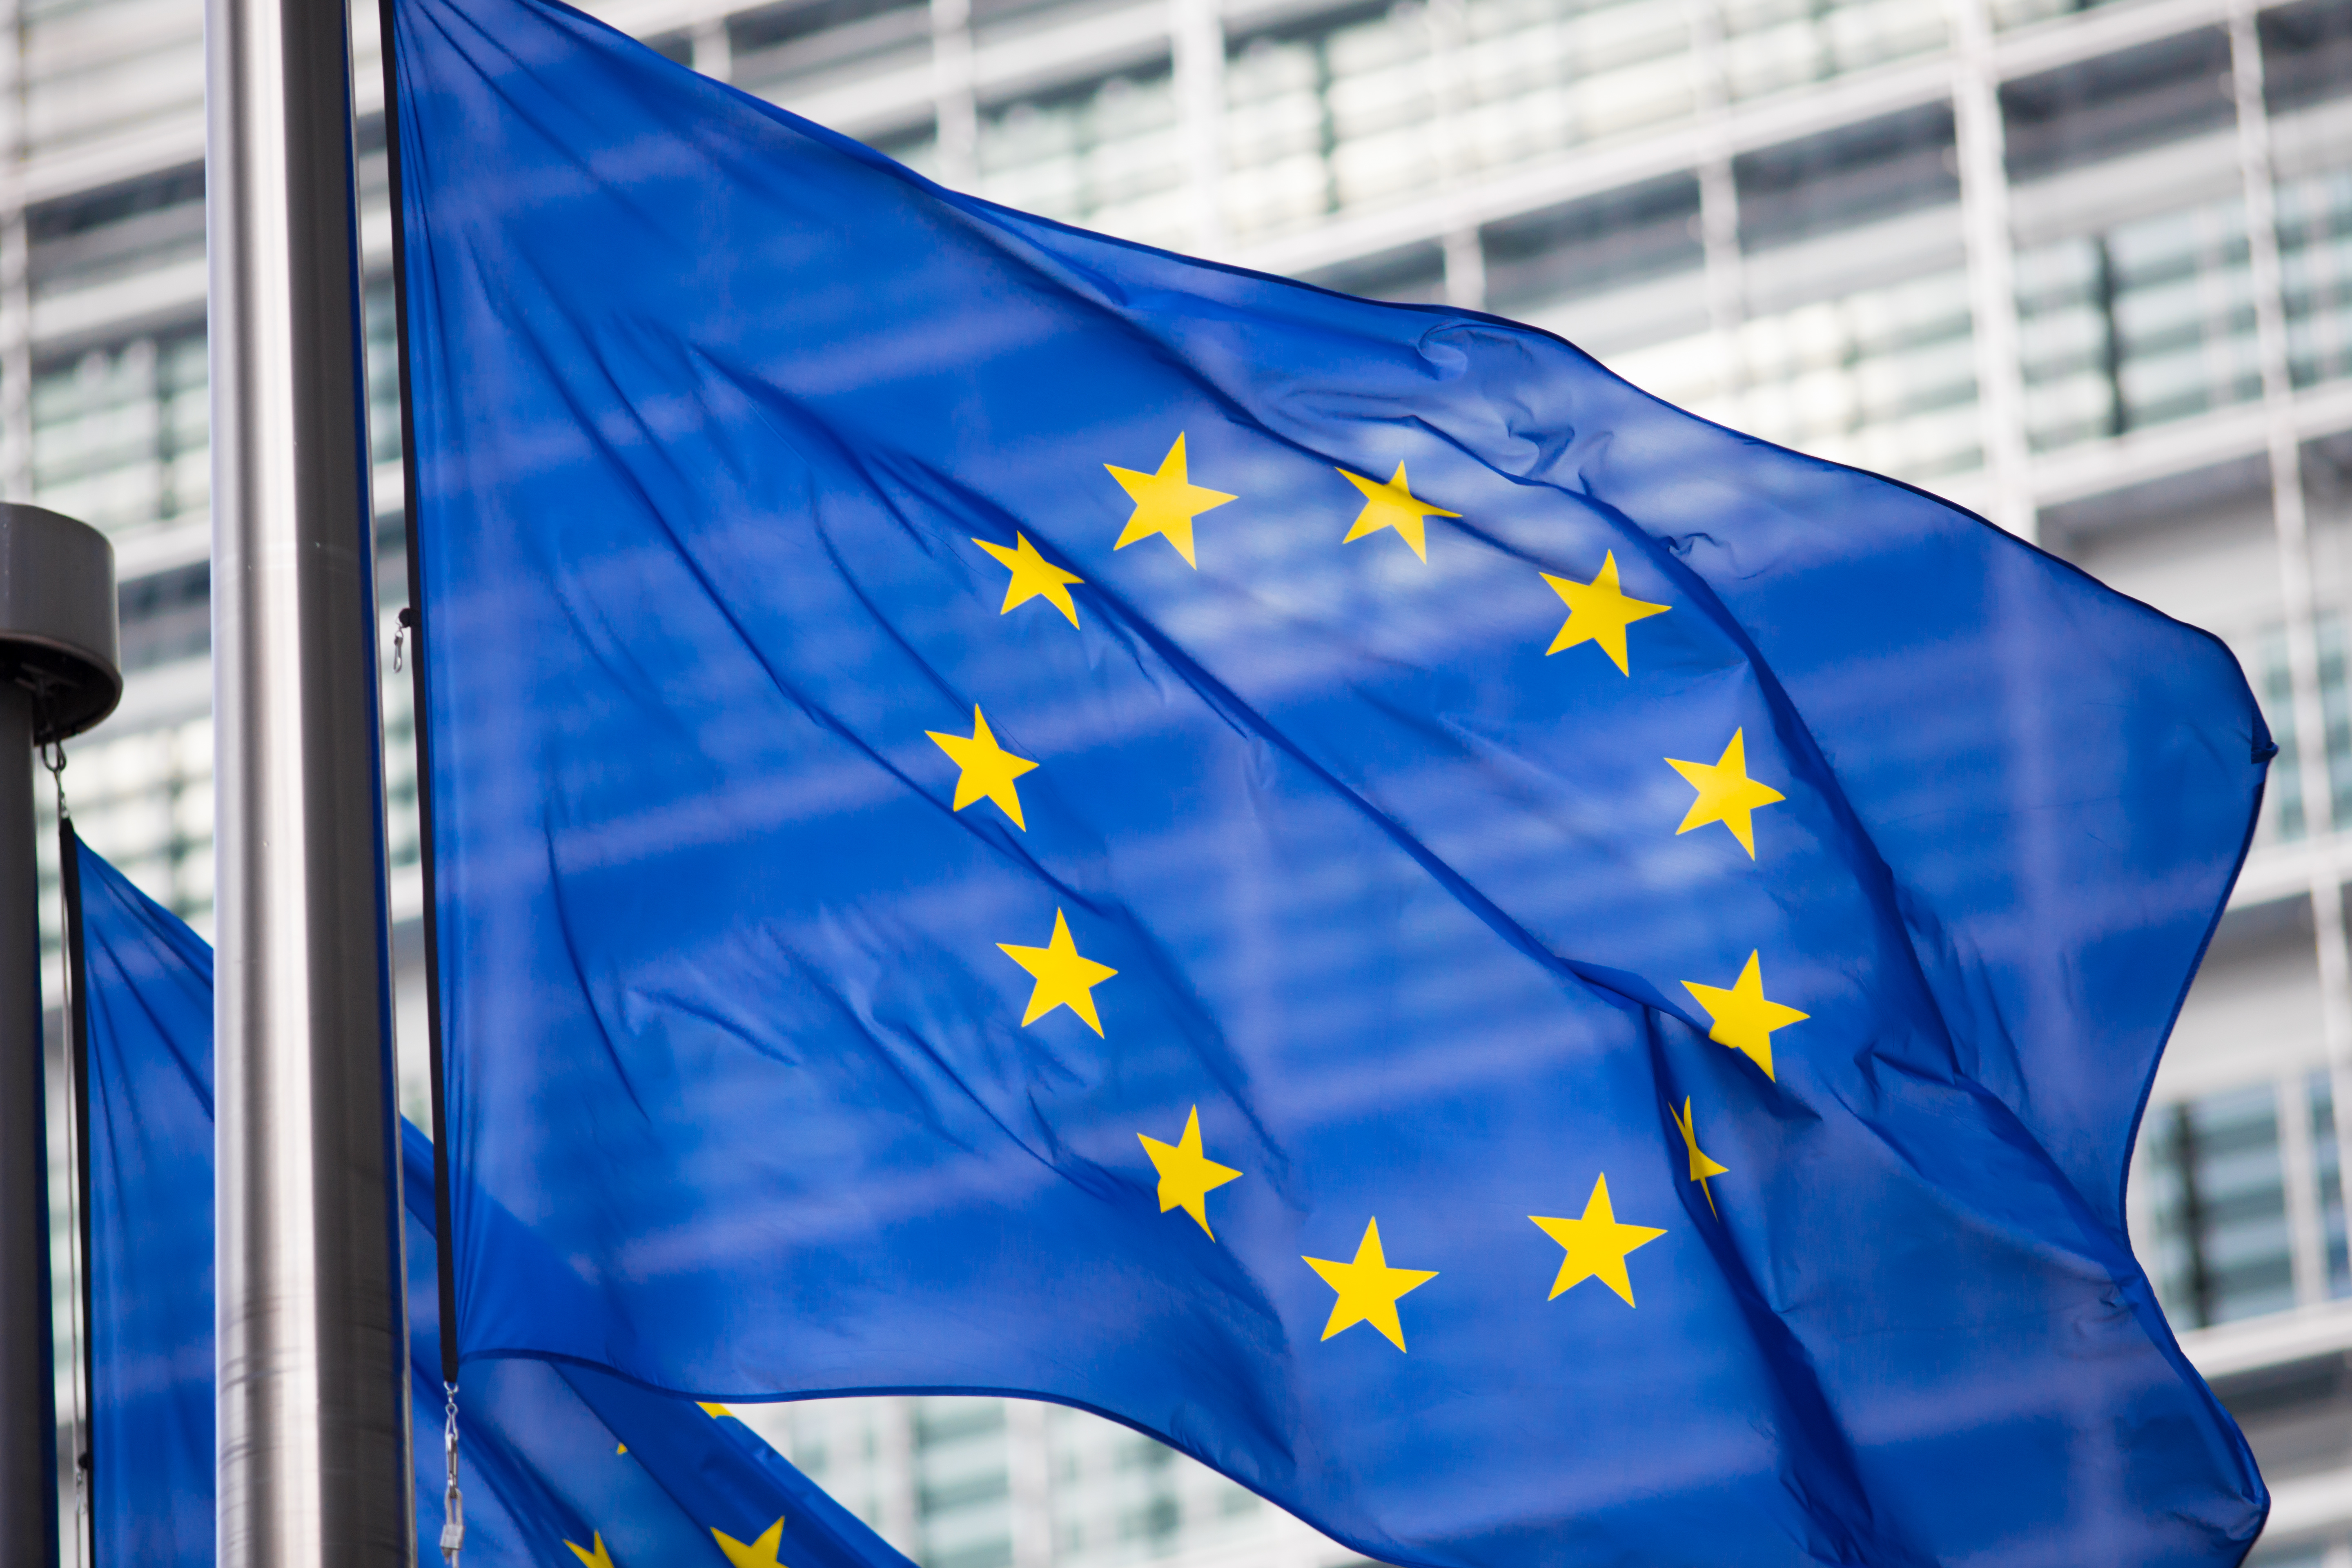 Eu энергия. ЕС Европейский Союз. Евроинтеграция ЕС Европейский Союз. Европейский Союз (Евросоюз, ЕС) Страна. Флаг европейского Союза.